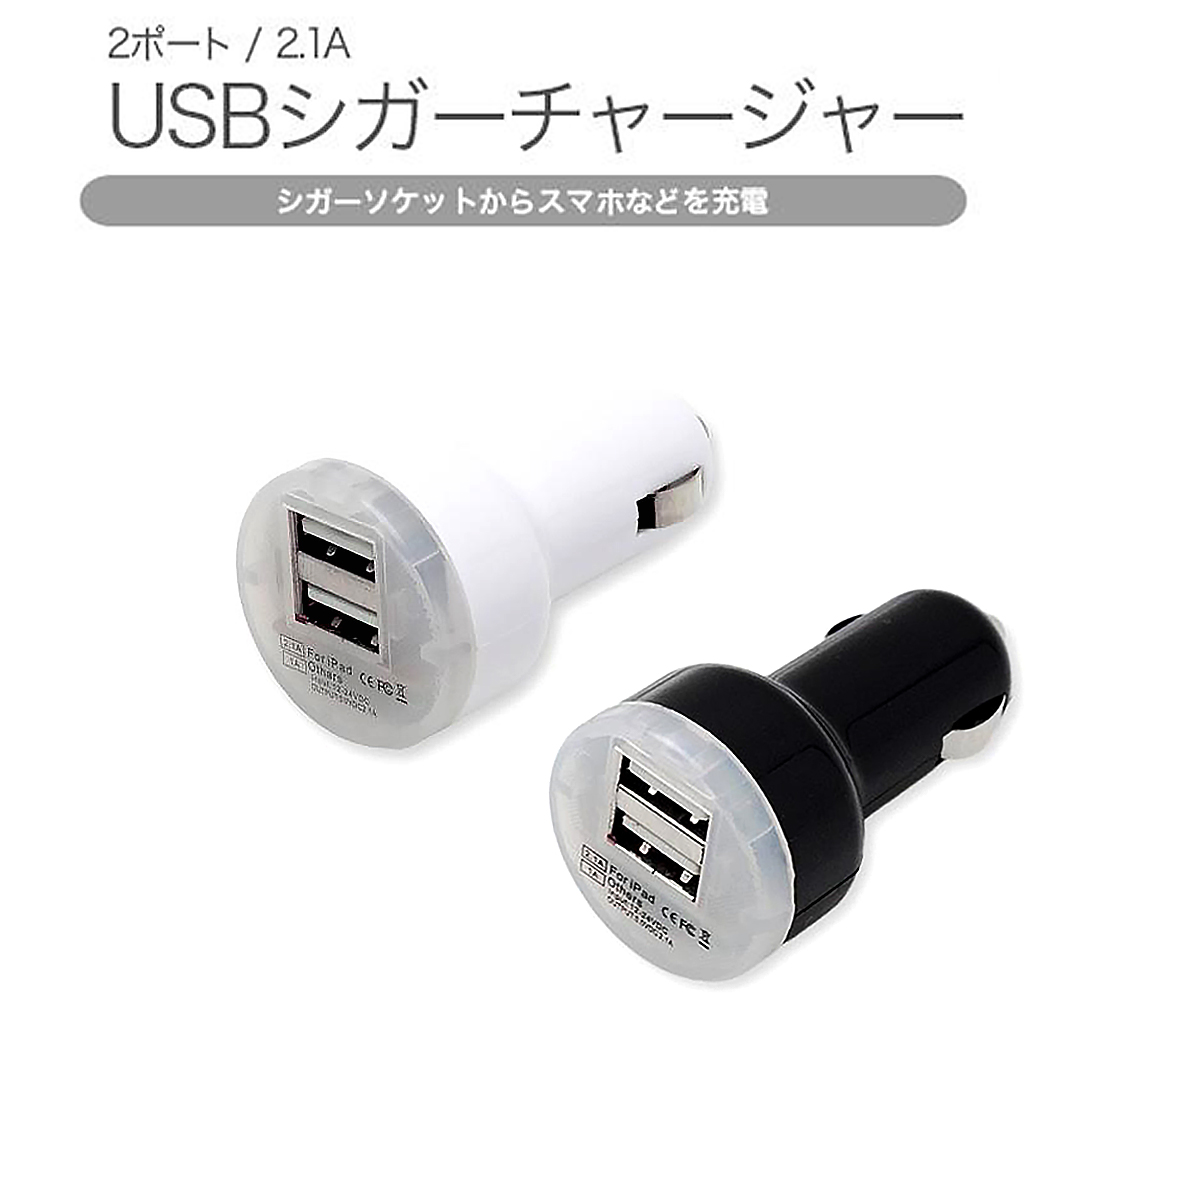 シガーソケット 2ポートUSB USB電源増設 充電カーチャージャー スマホからタブレットまで 1本2役同時充電可能 12V SDM便送料無料 1ヶ月保証